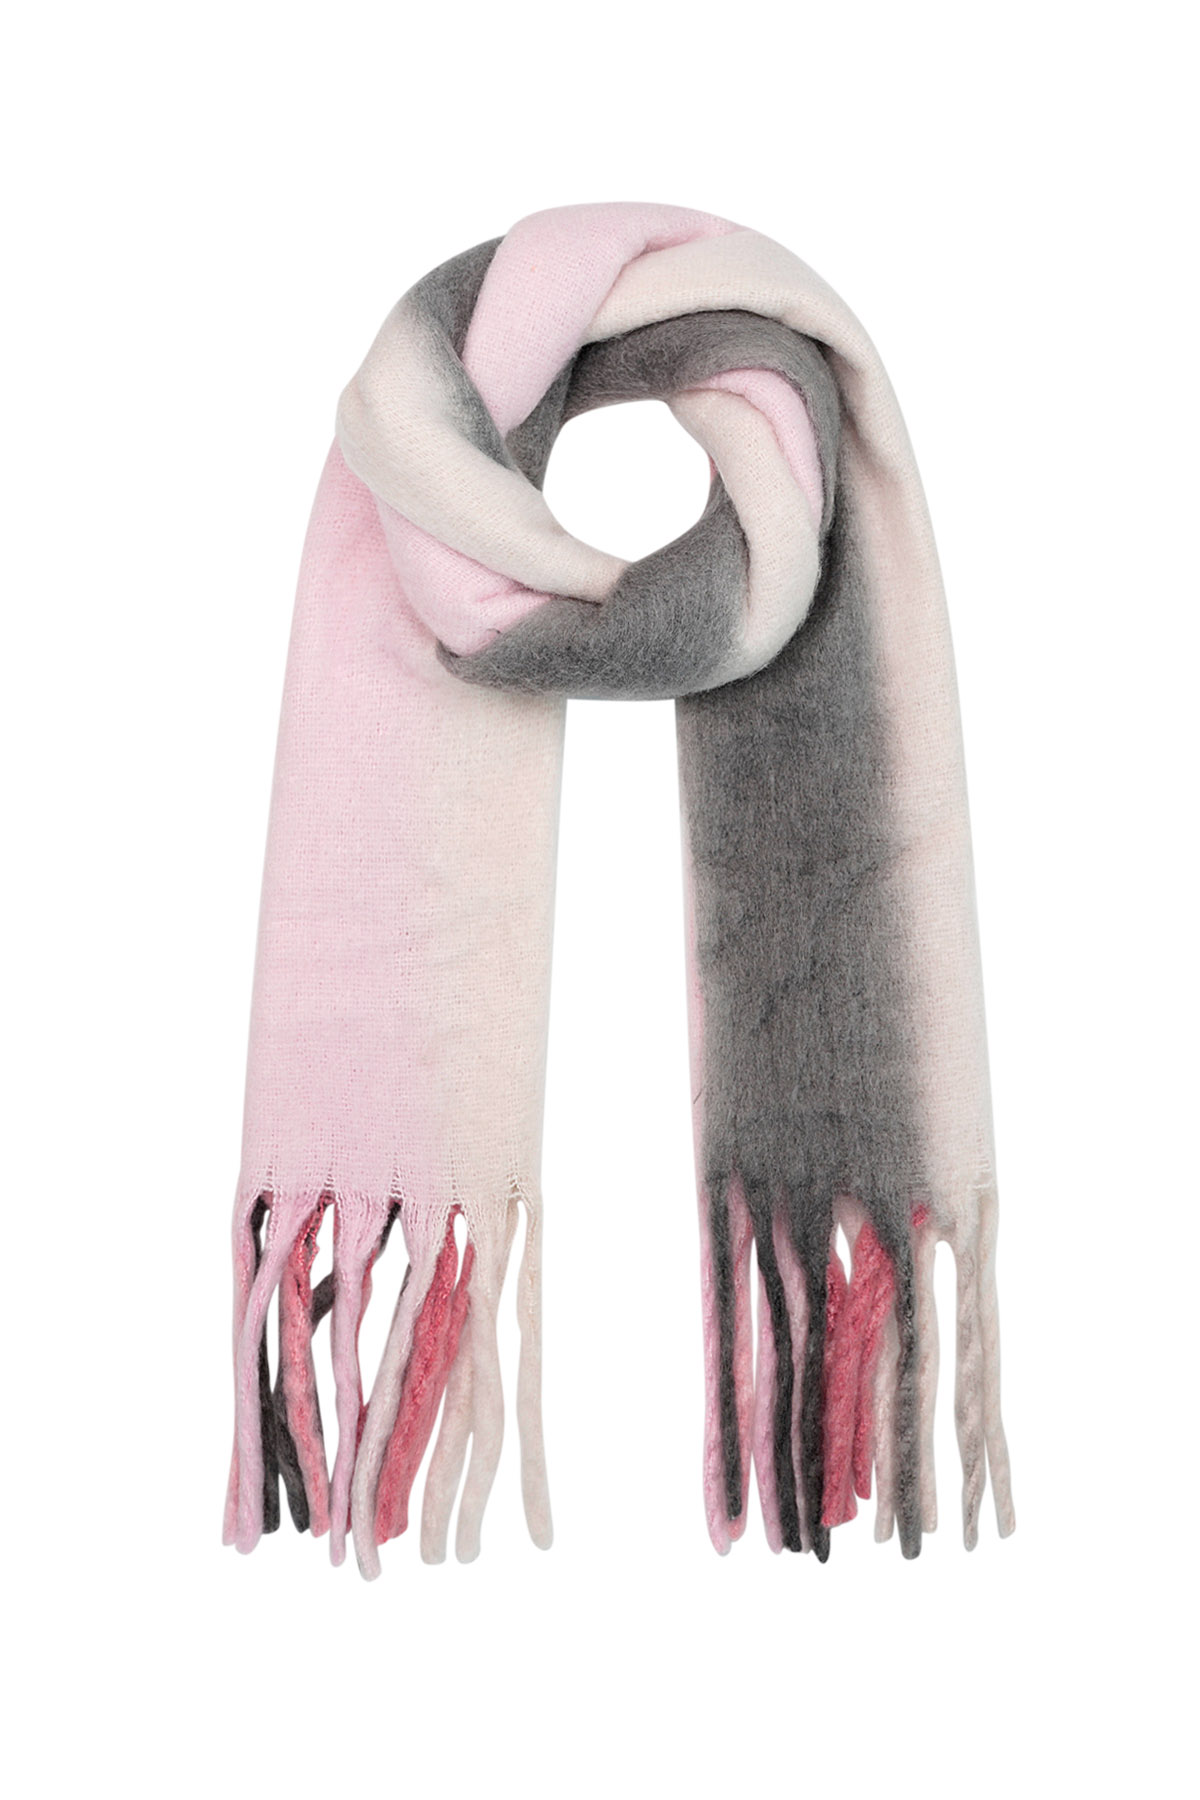 Wintersjaal ombré kleuren  roze/grijs Polyester 